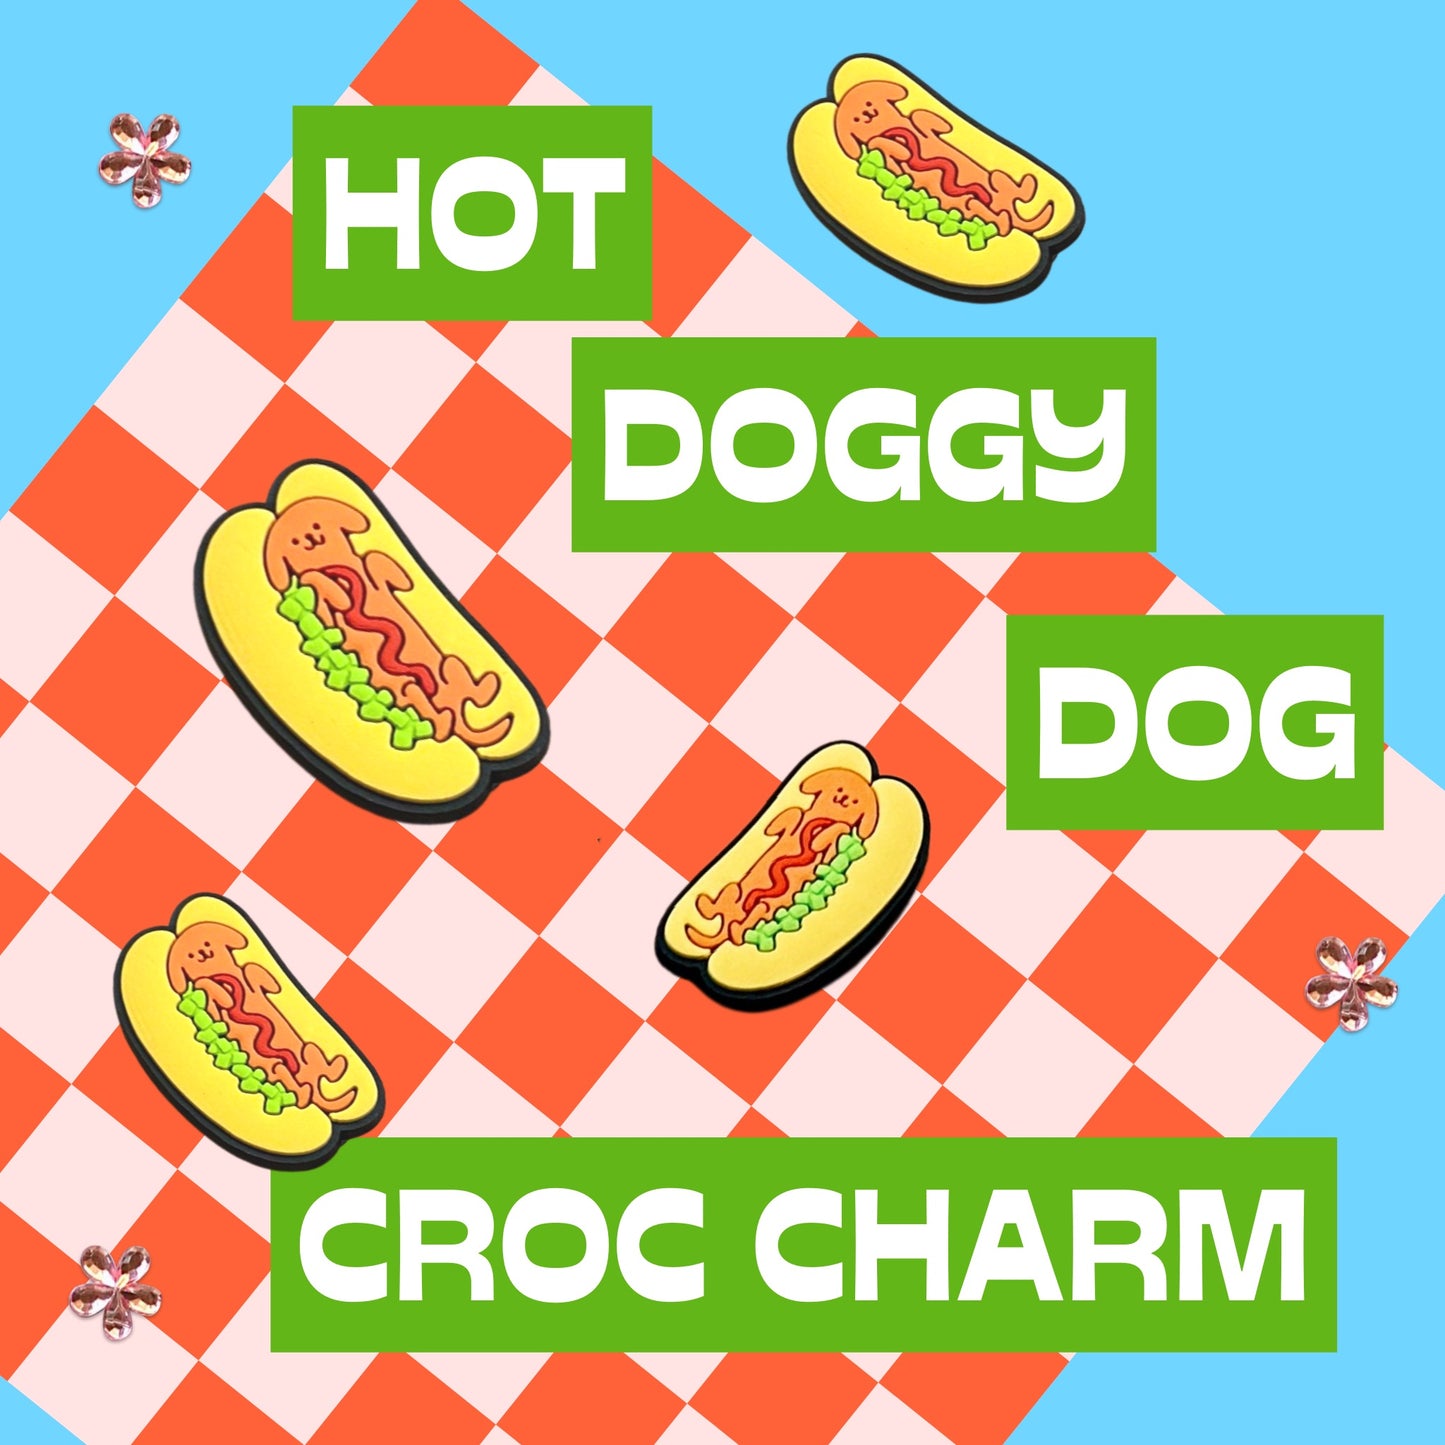 Hot Doggy Dog Croc Charm